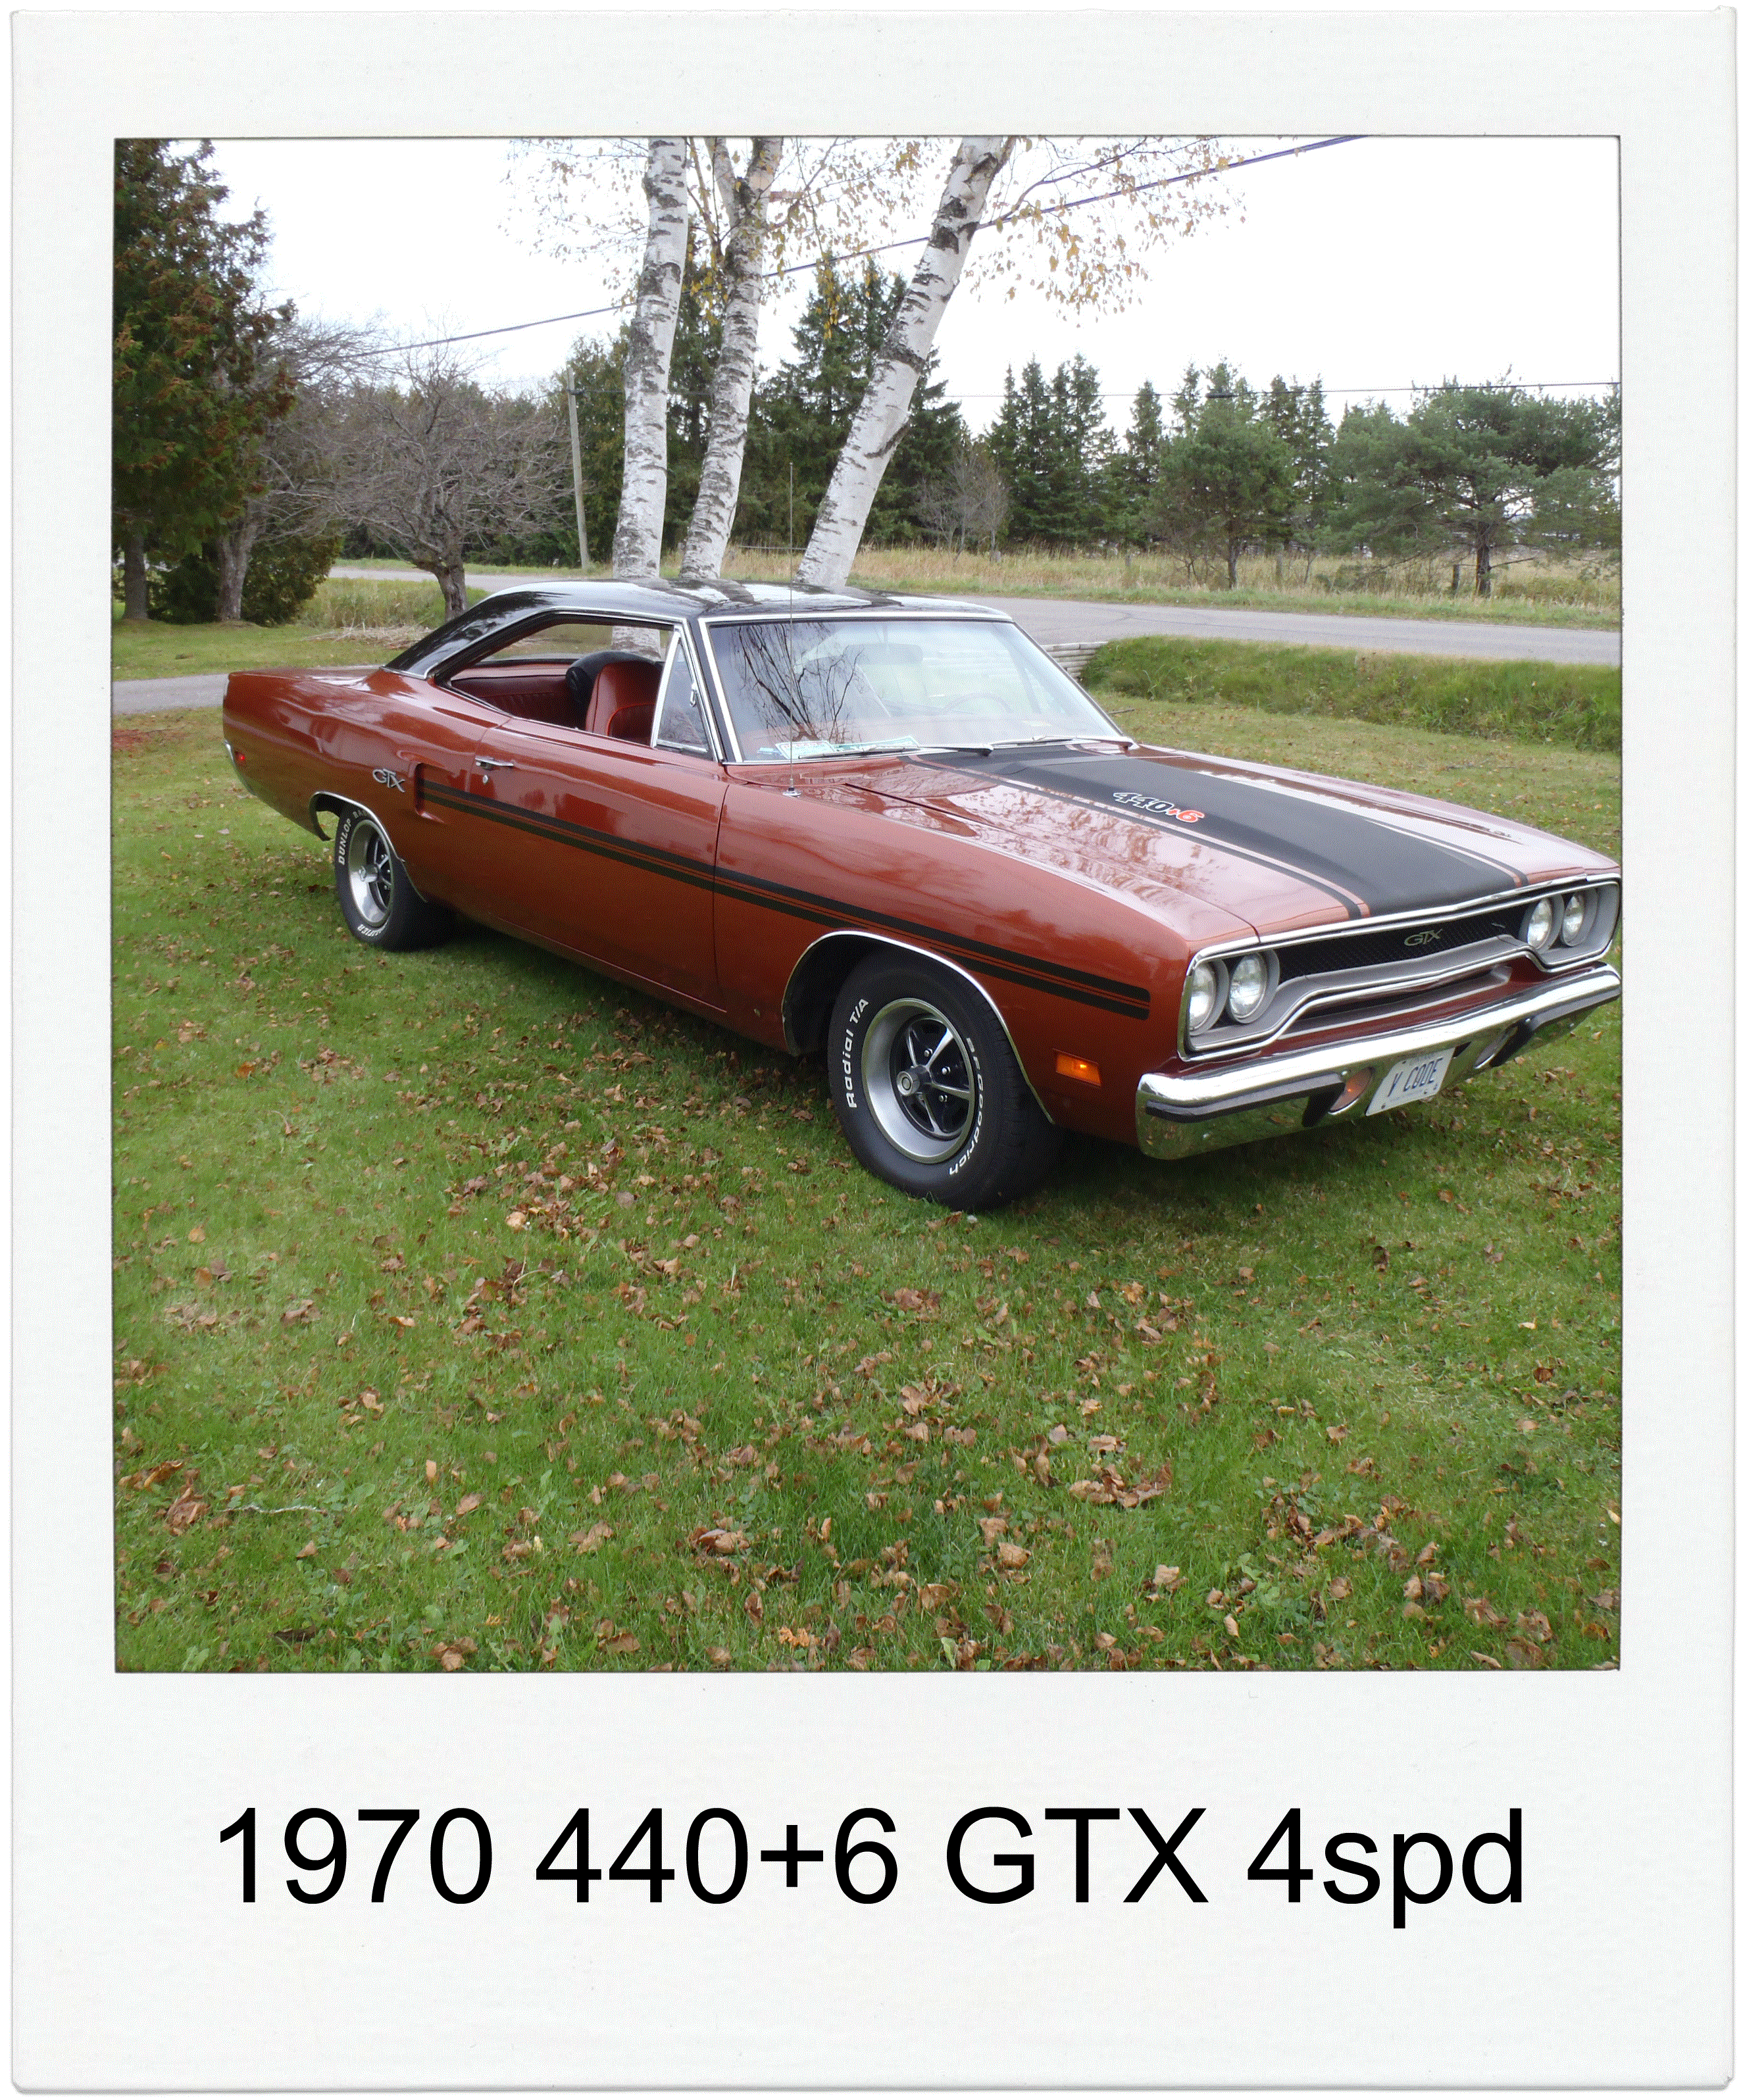 1970 440 GTX